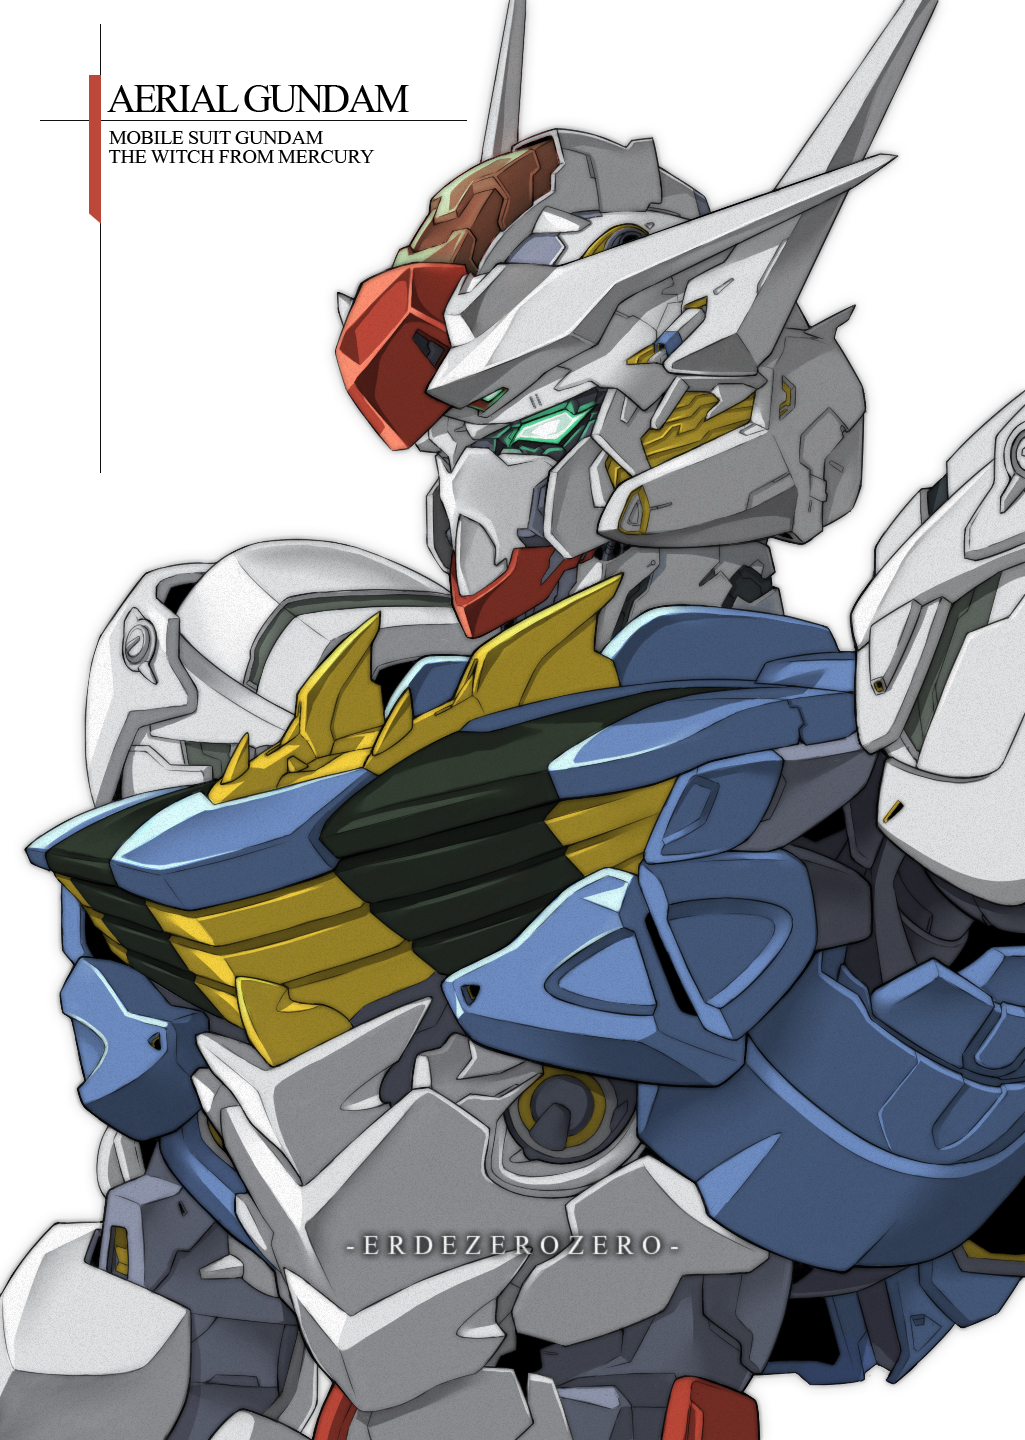 Anime 1025x1440 Mobile Suit Gundam THE WITCH FROM MERCURY Gundam Aerial Super Robot Taisen artwork digital art fan art mechs Gundam